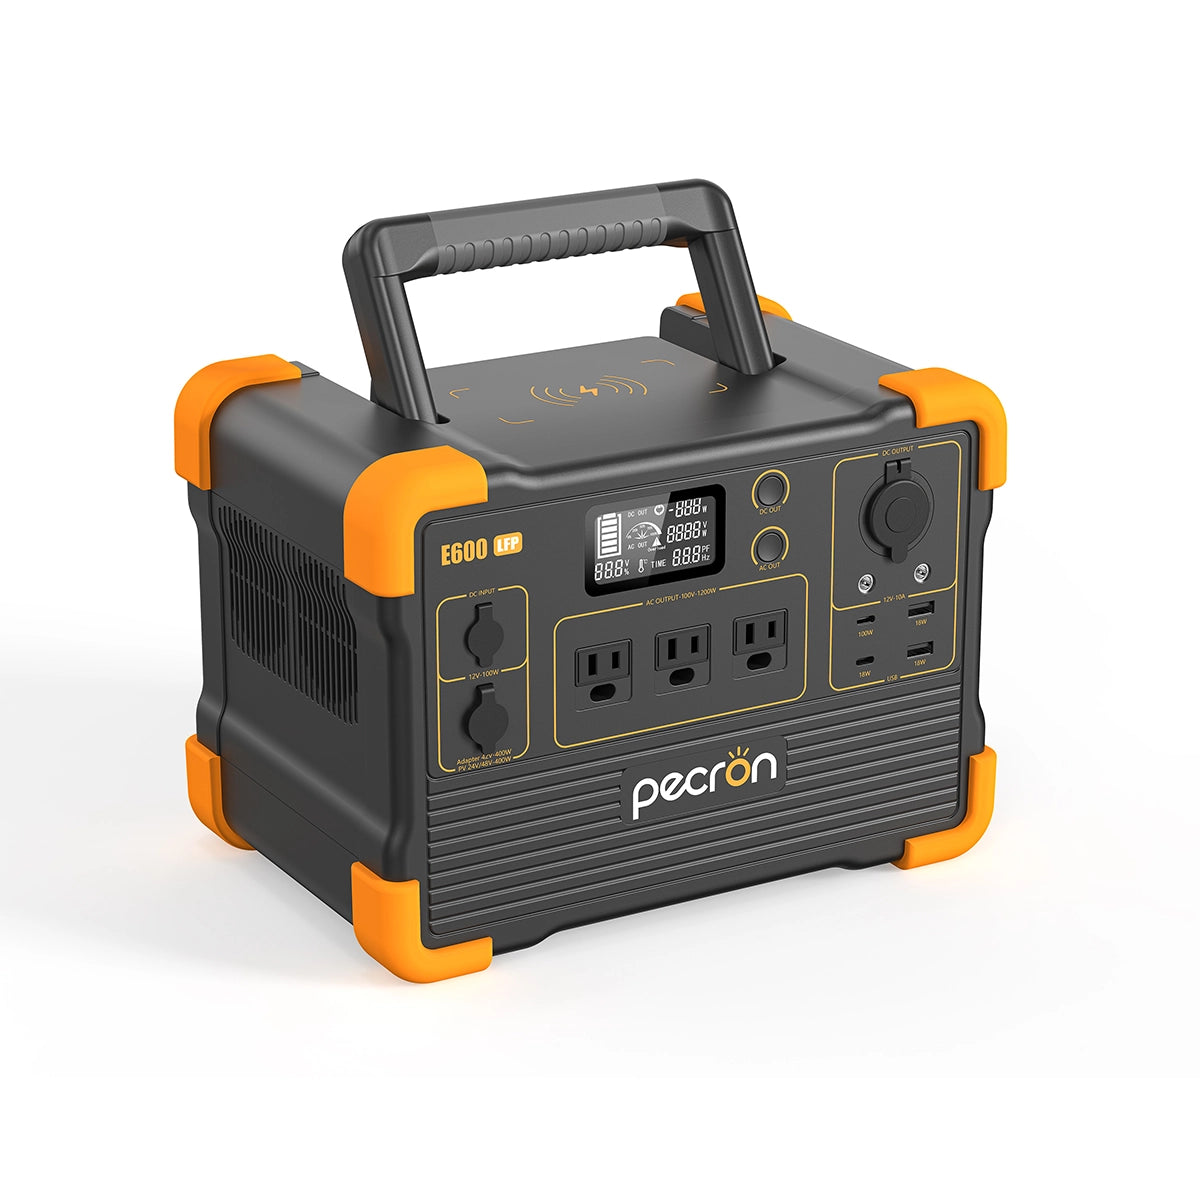 PECRON E600LFP 小型ポータブル電源【限定セール】